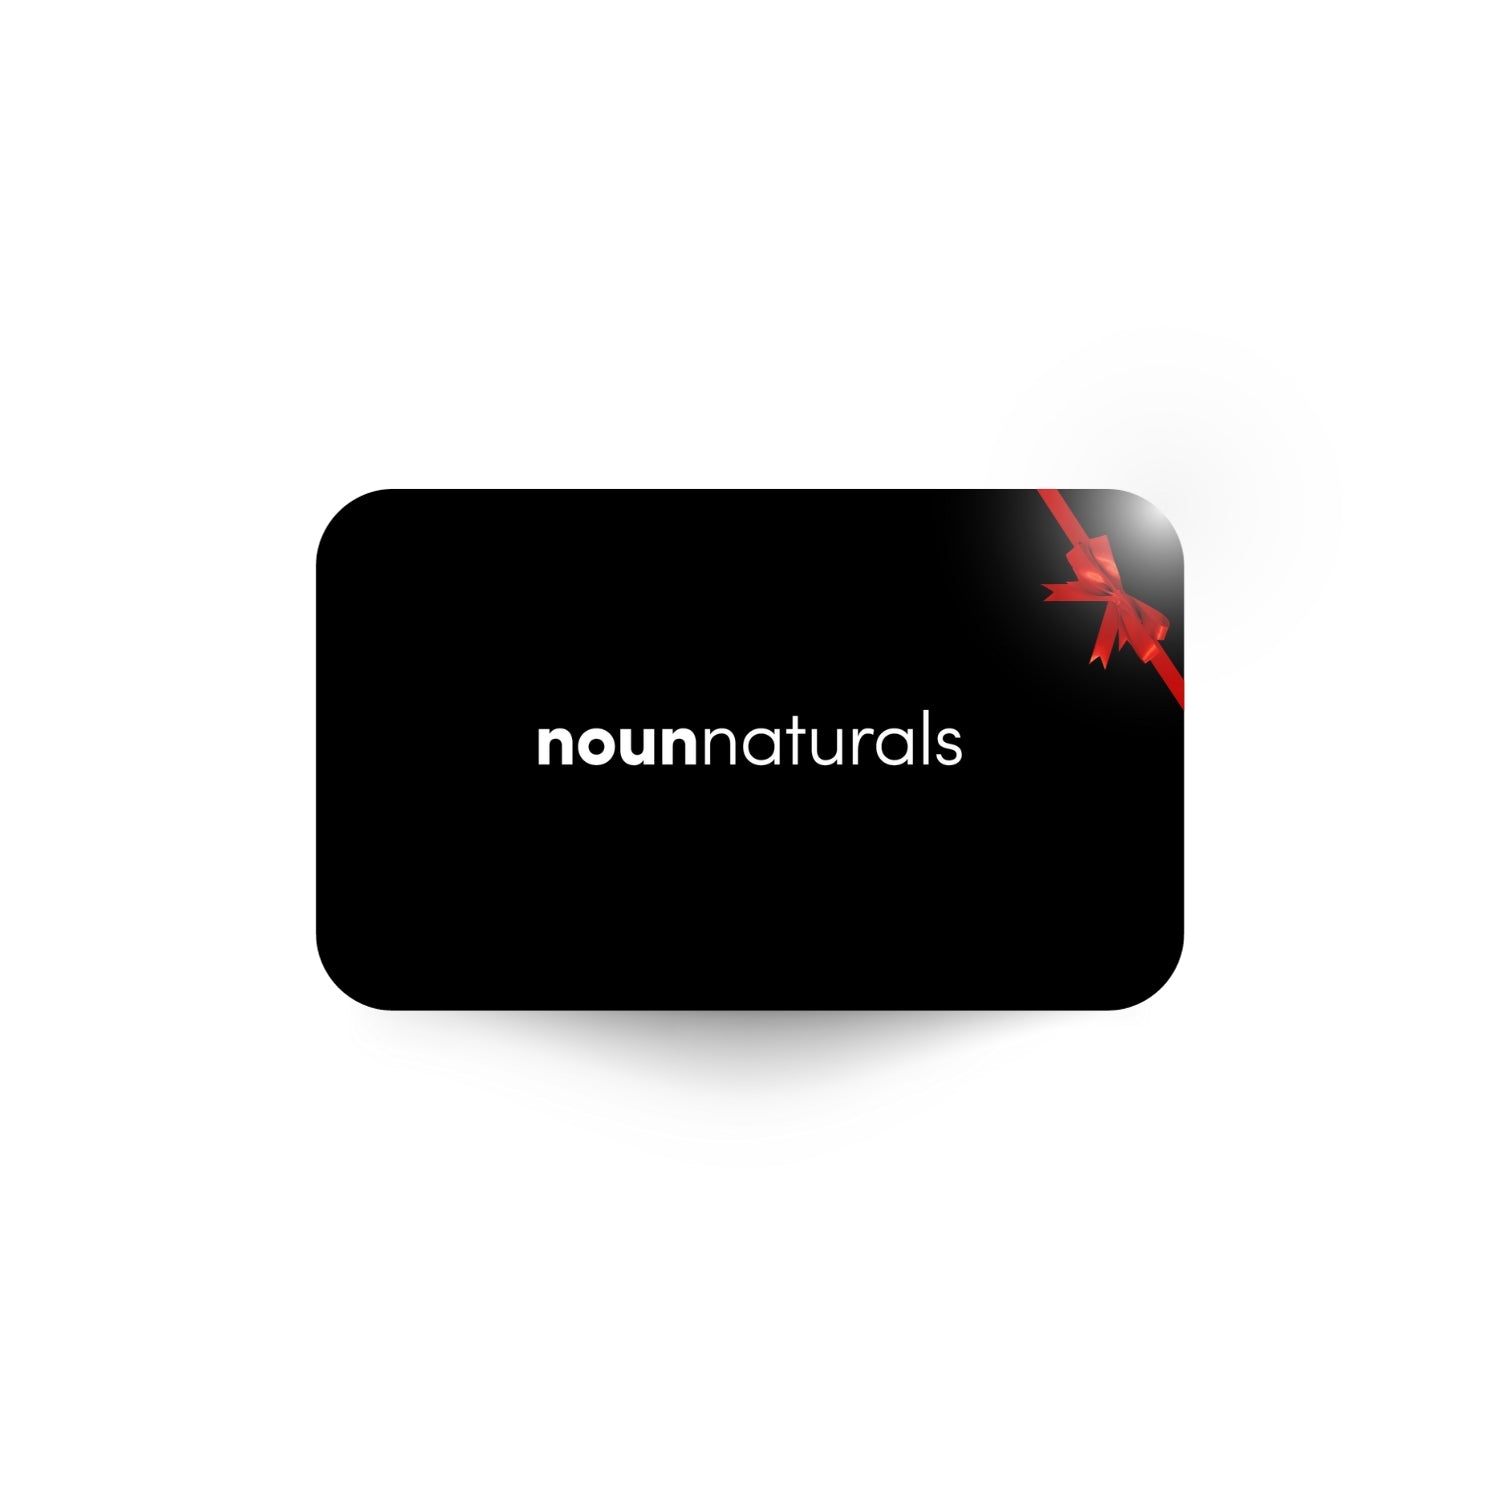 Noun Naturals Gift Card - Noun Naturals Habibi Oil - Habibi Life - Noun Beard Oil -Habibi Oil - Hair Growth Oil